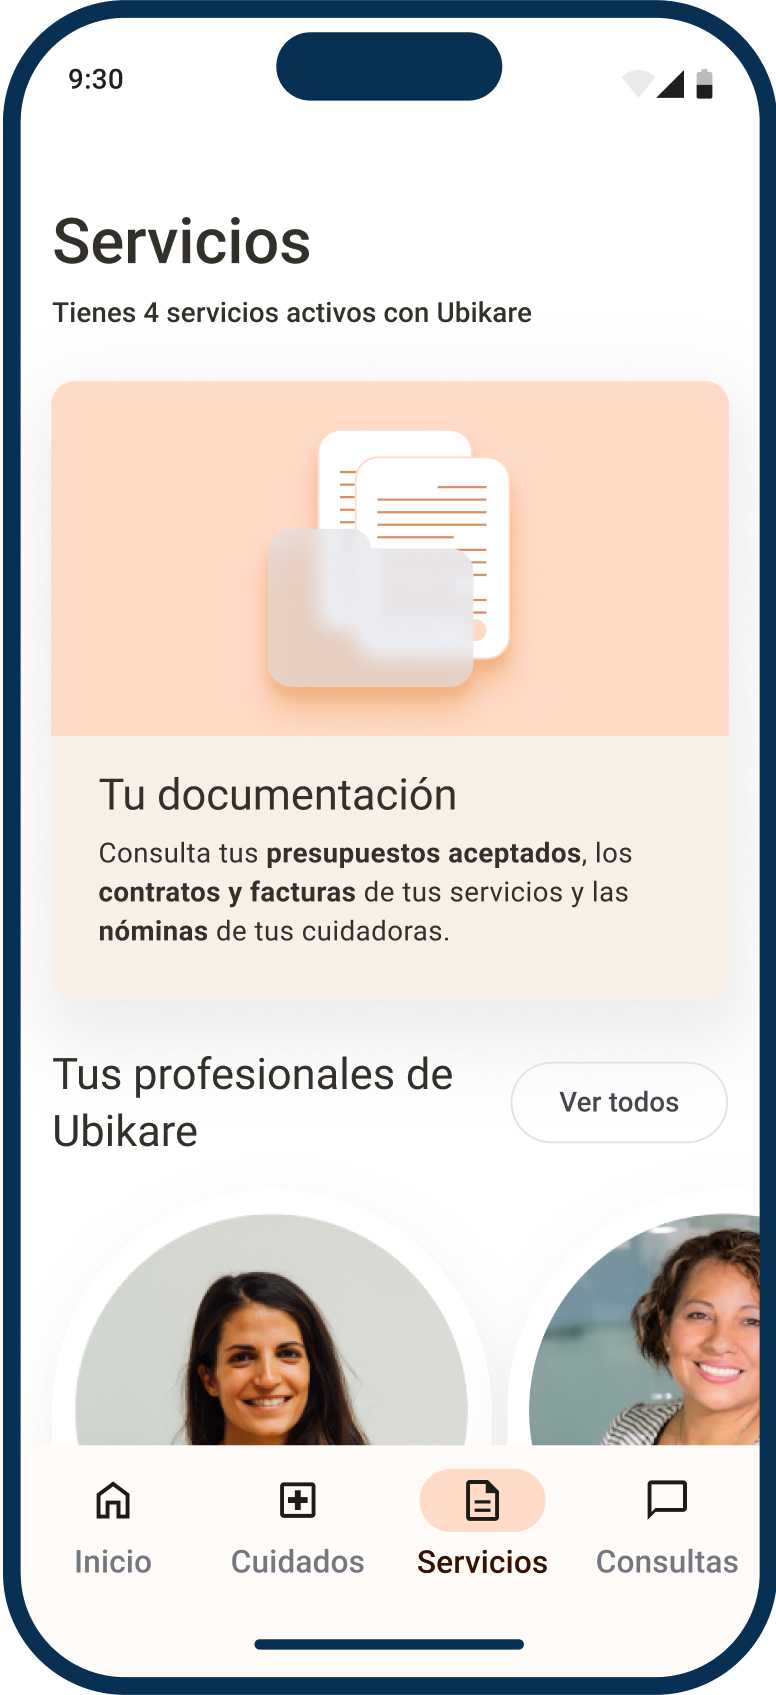 App de Ubikare, pantalla de Servicios muestra lista de profesionales Ubikare